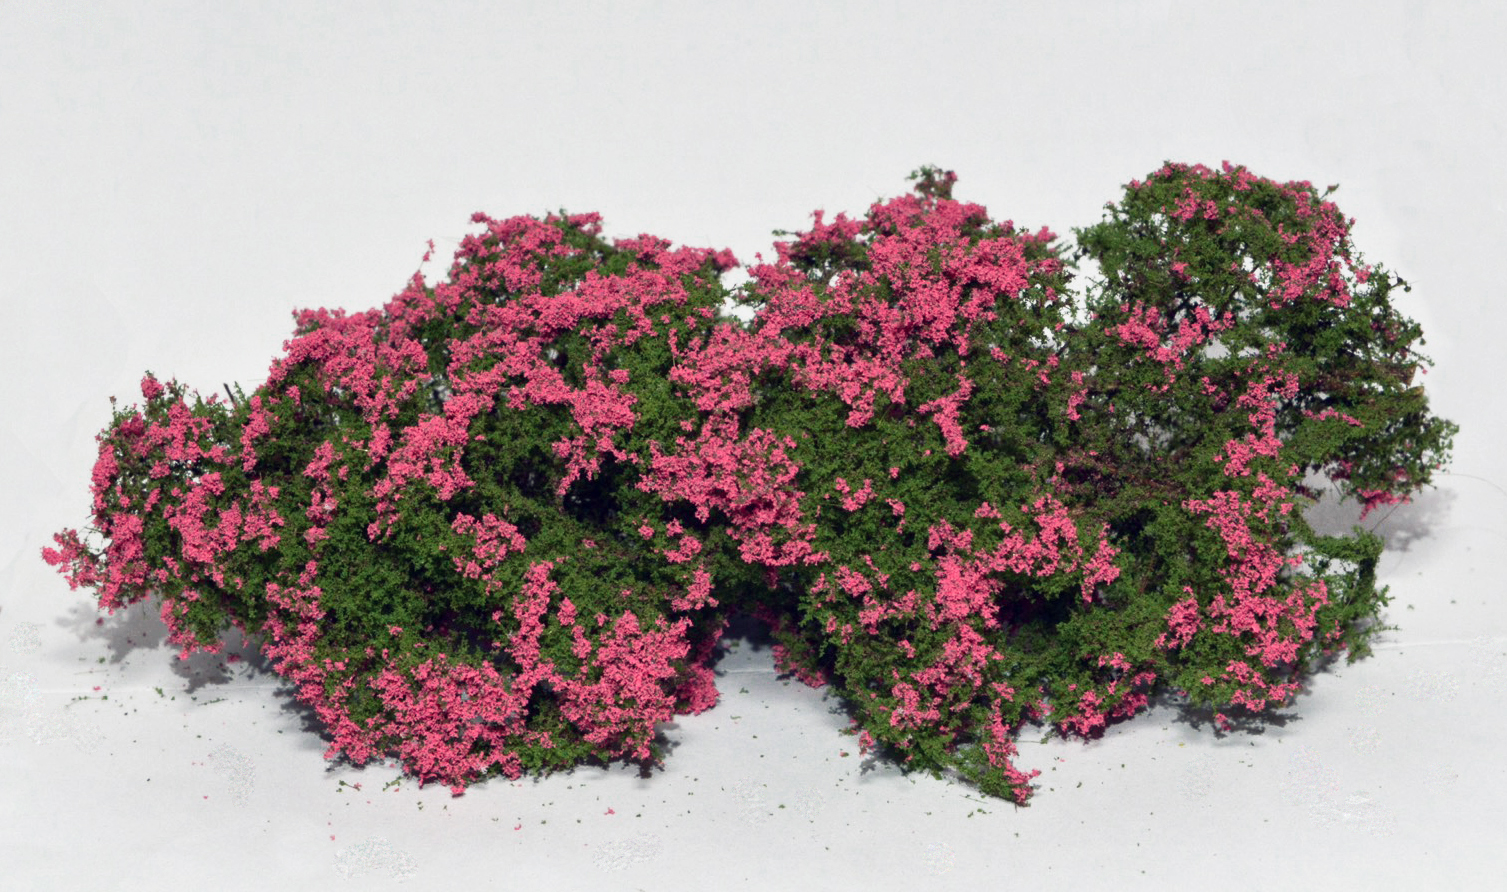 Flowering shrubs – Pink